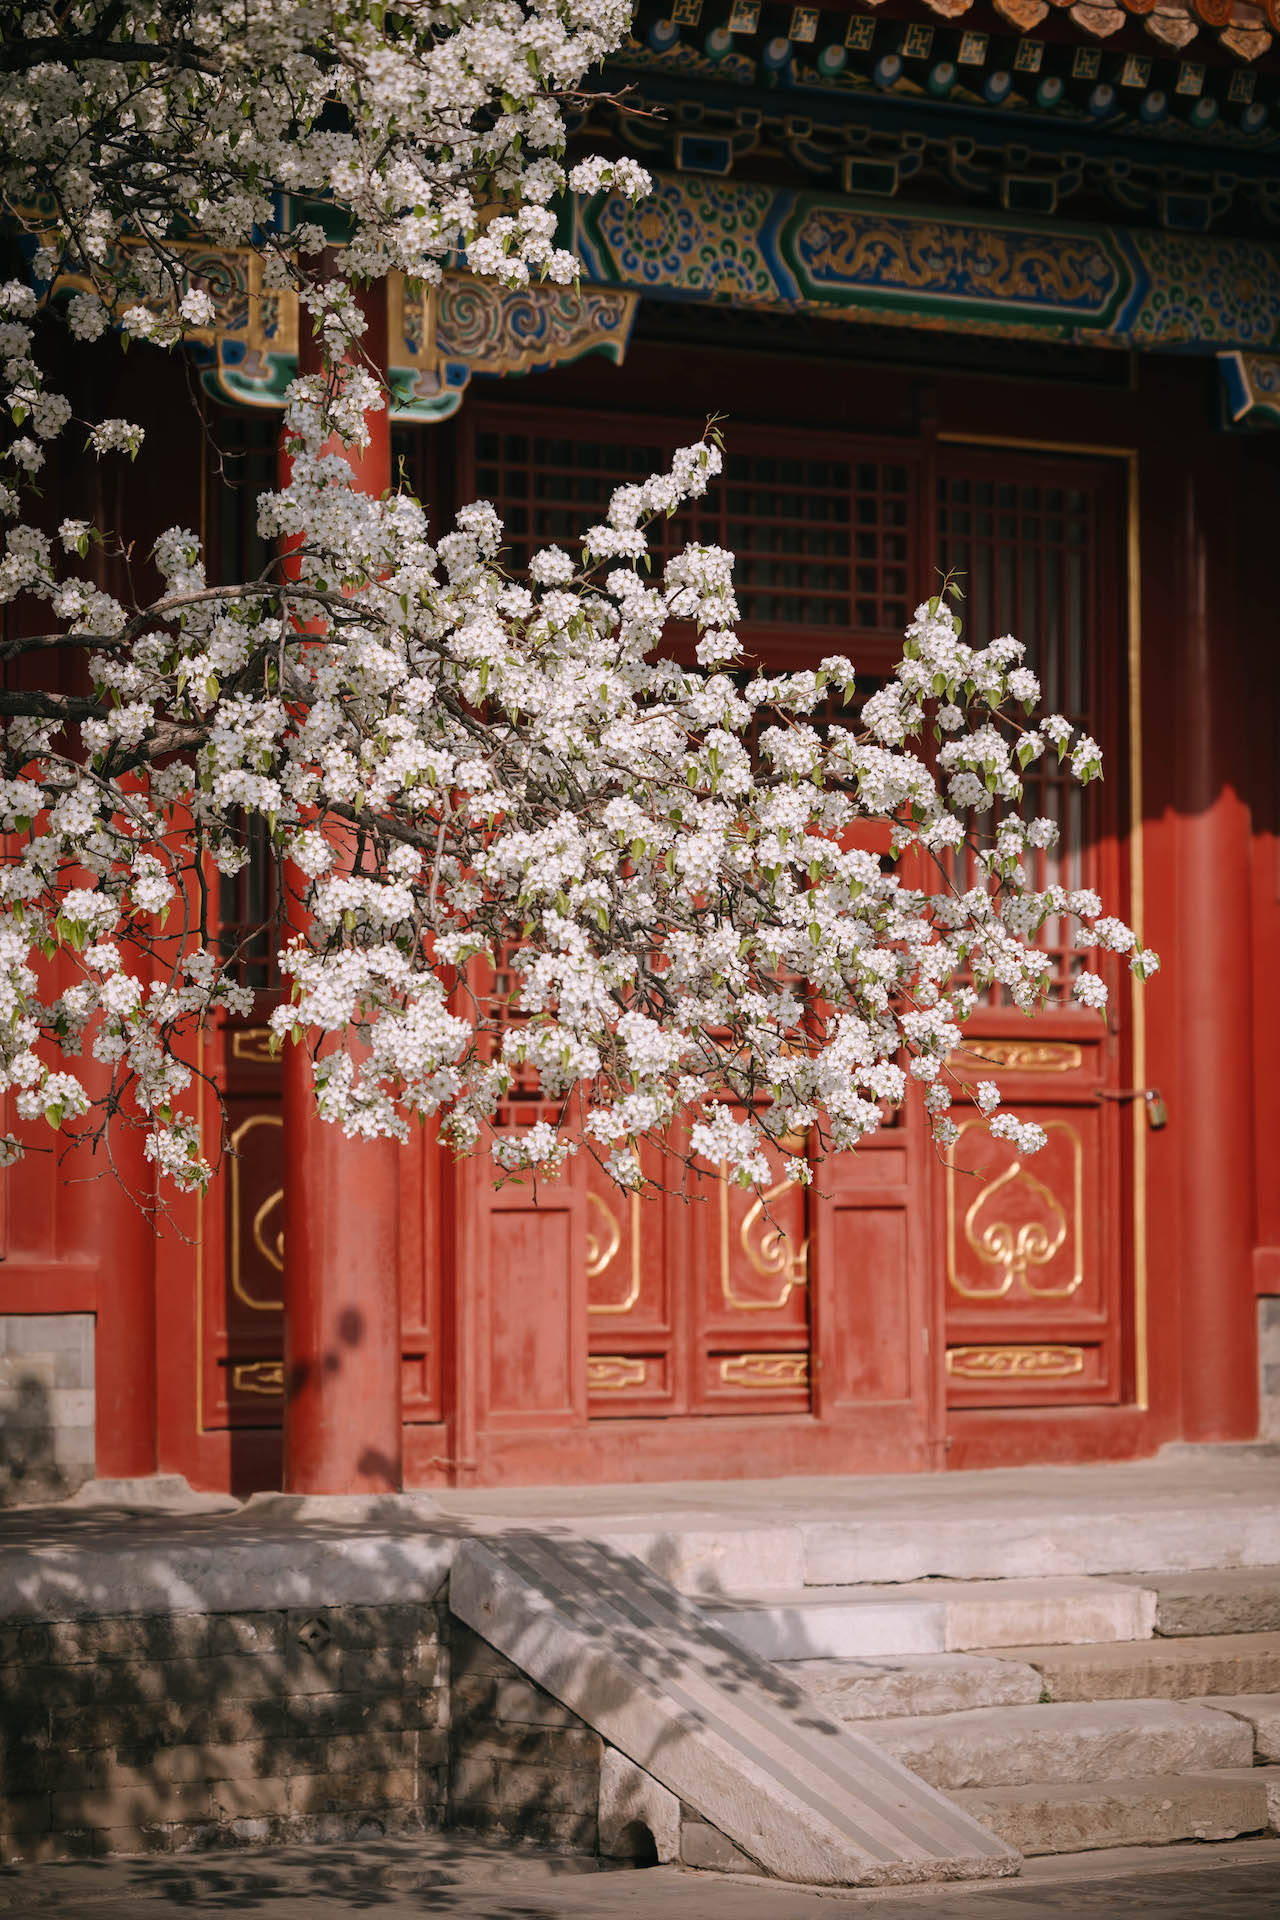 雪白的花朵与红墙金瓦相映,可谓是寿康宫一年中最美的时候